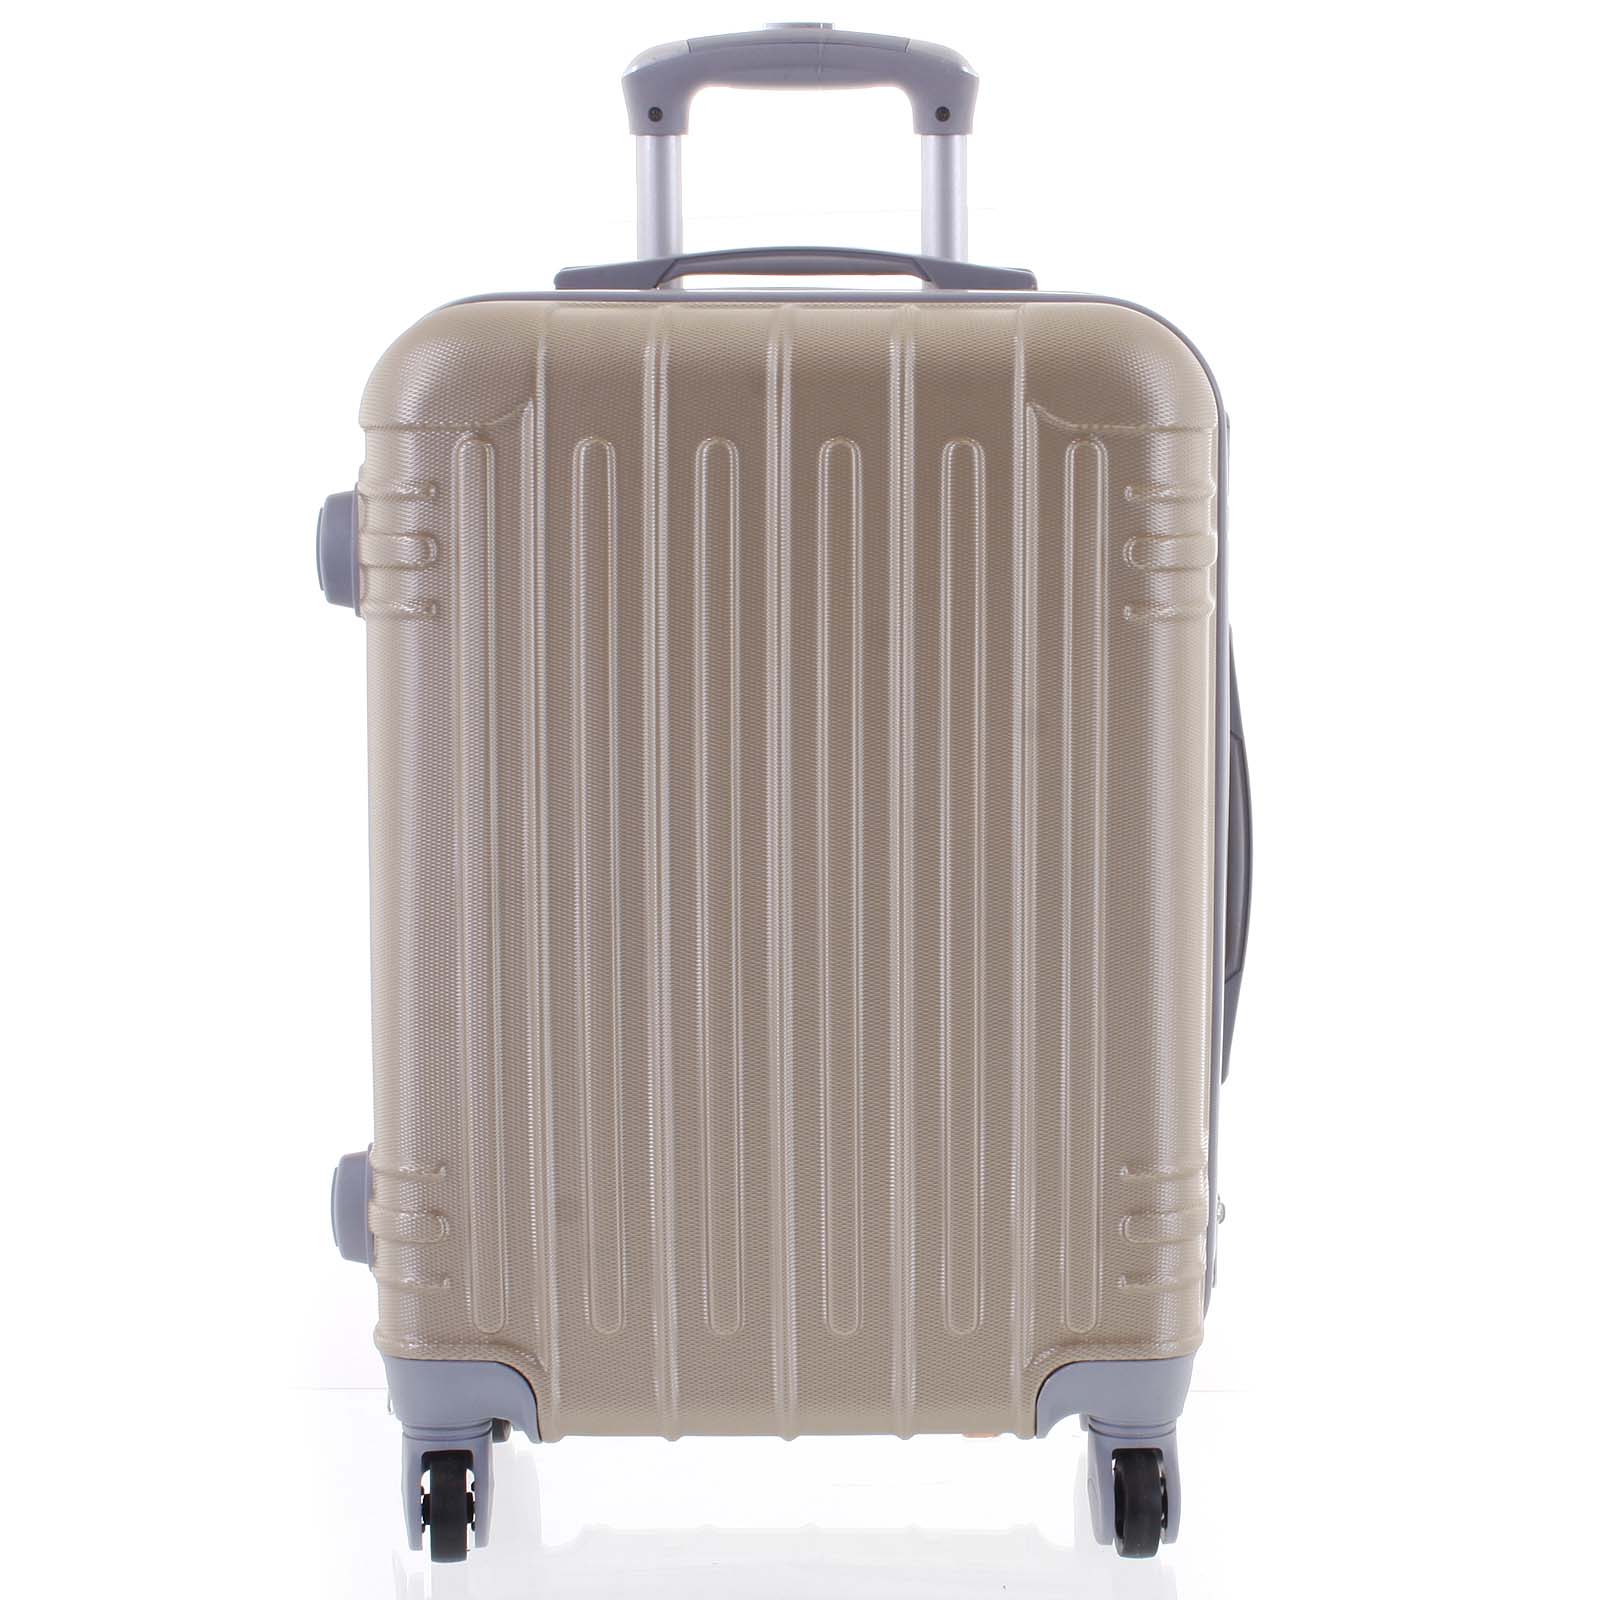 Moderní zlatý skořepinový cestovní kufr - Ormi Dopp S zlatá